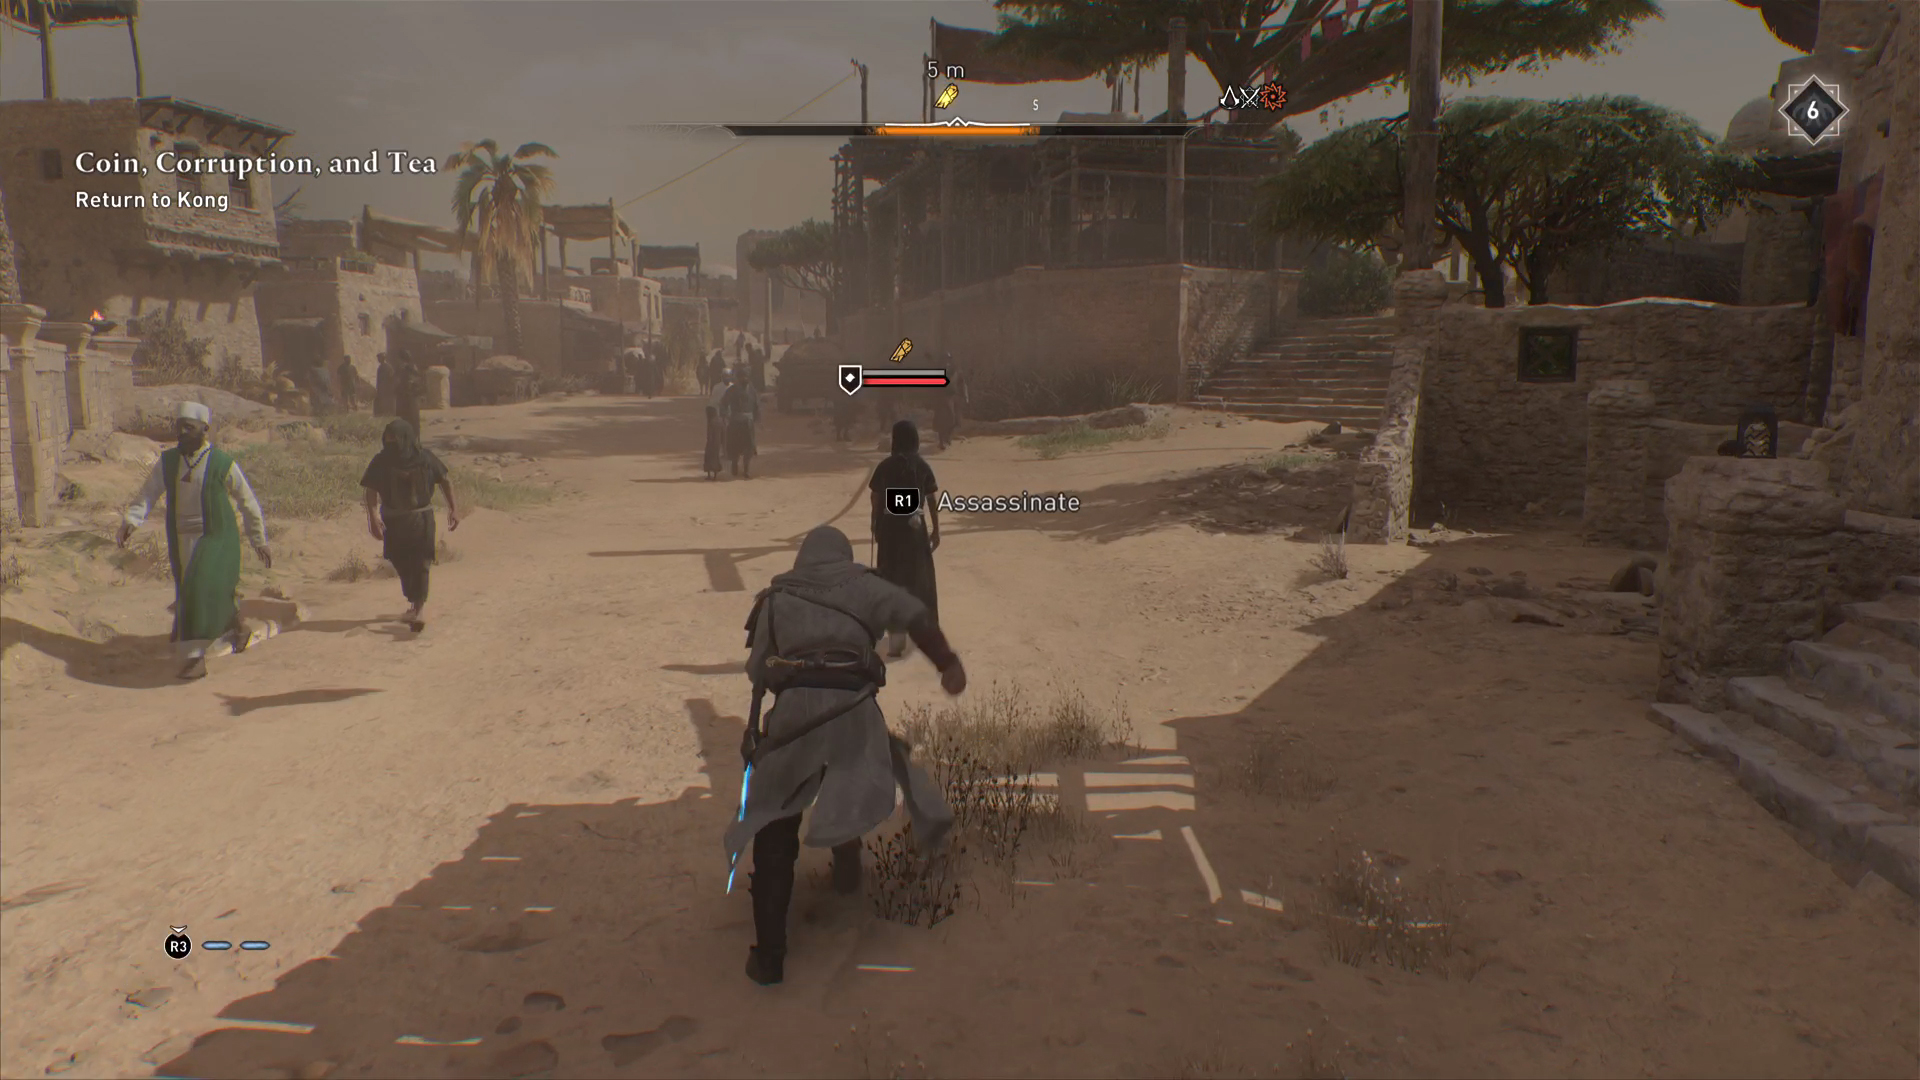 Snikmyrde en NPC for å få tak i det mystiske skjæret i Assassin's Creed Mirage